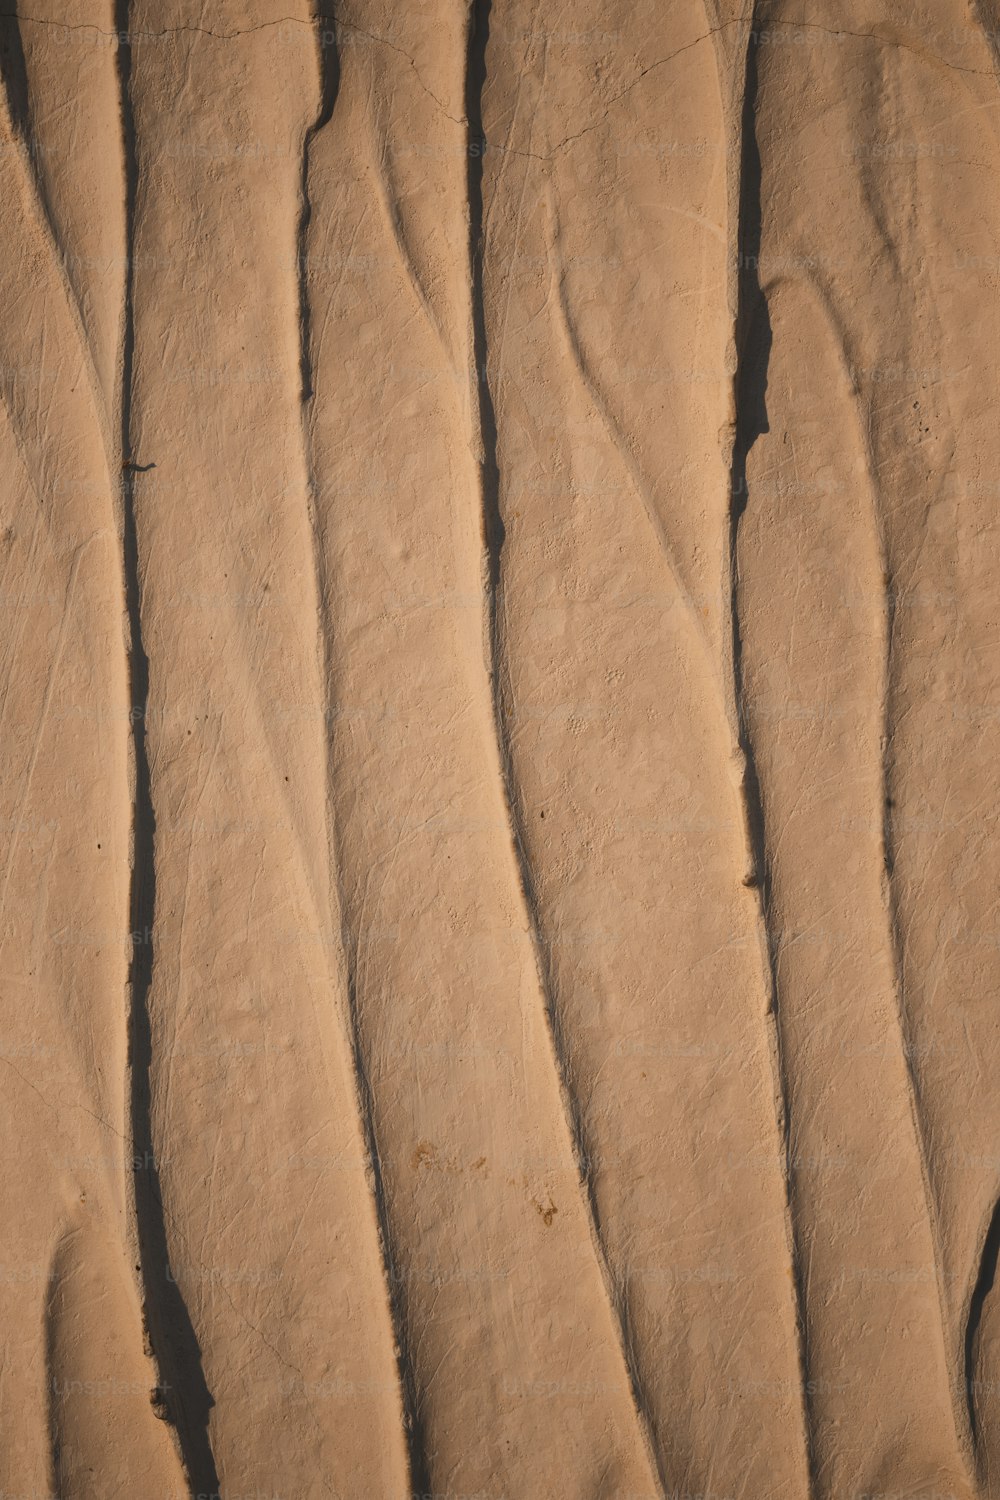 Un primer plano de una duna de arena con líneas onduladas